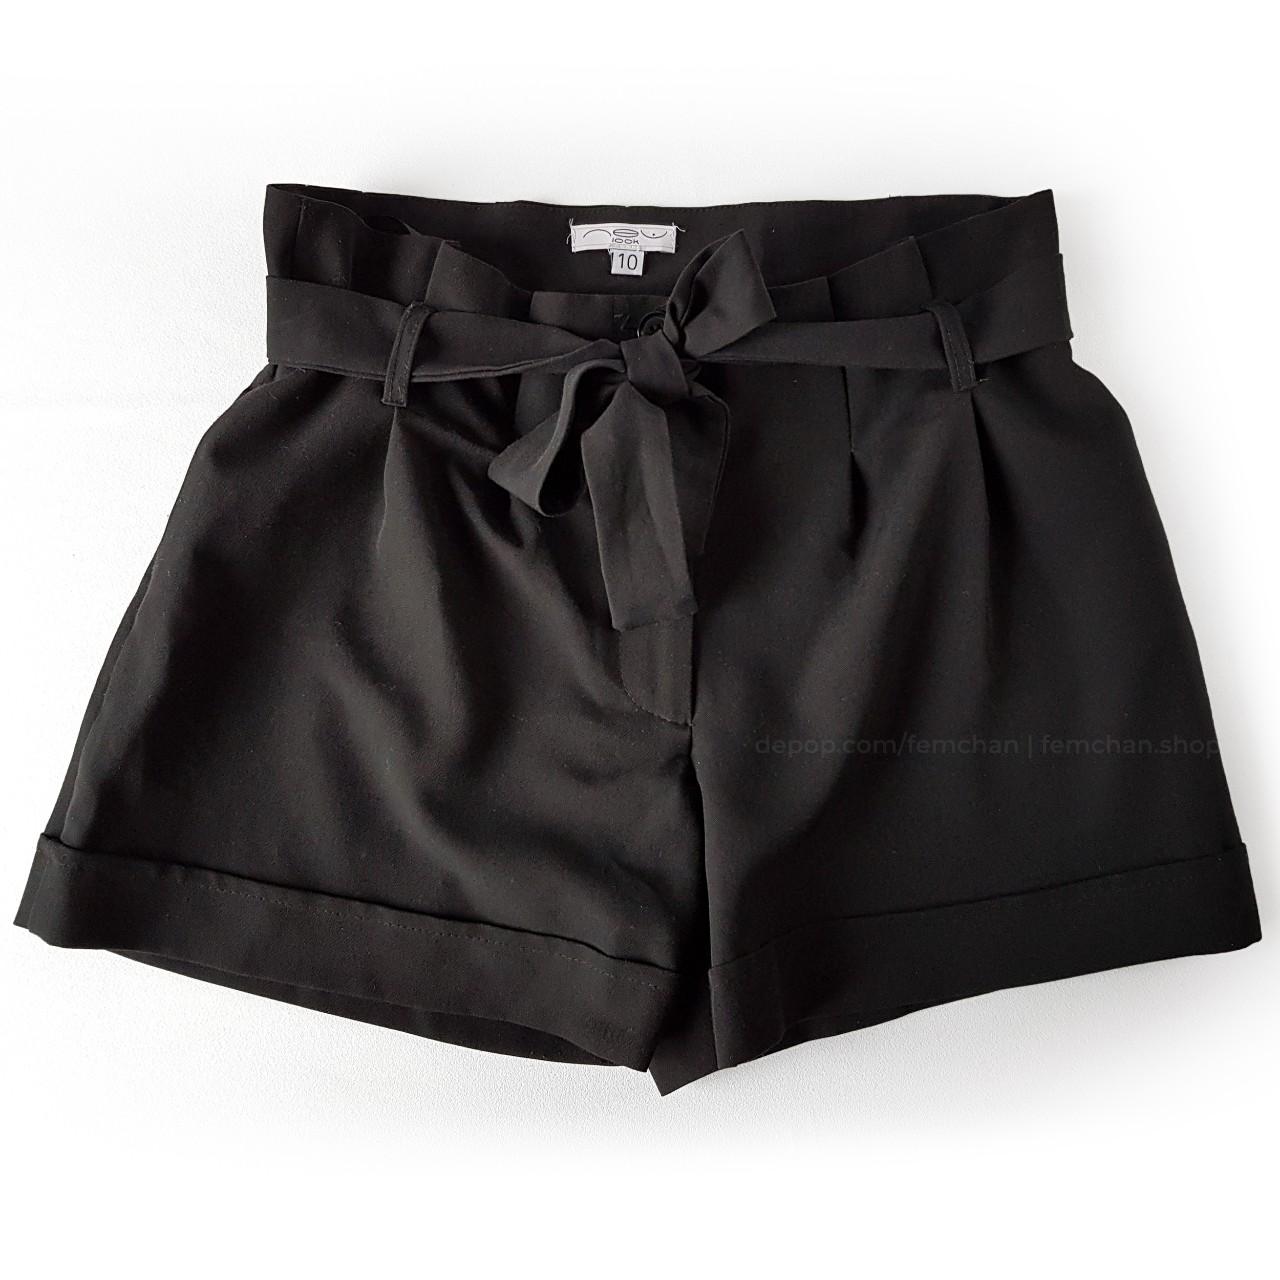 Cute paperbag waist shorts. Matching buttons, side... - Depop